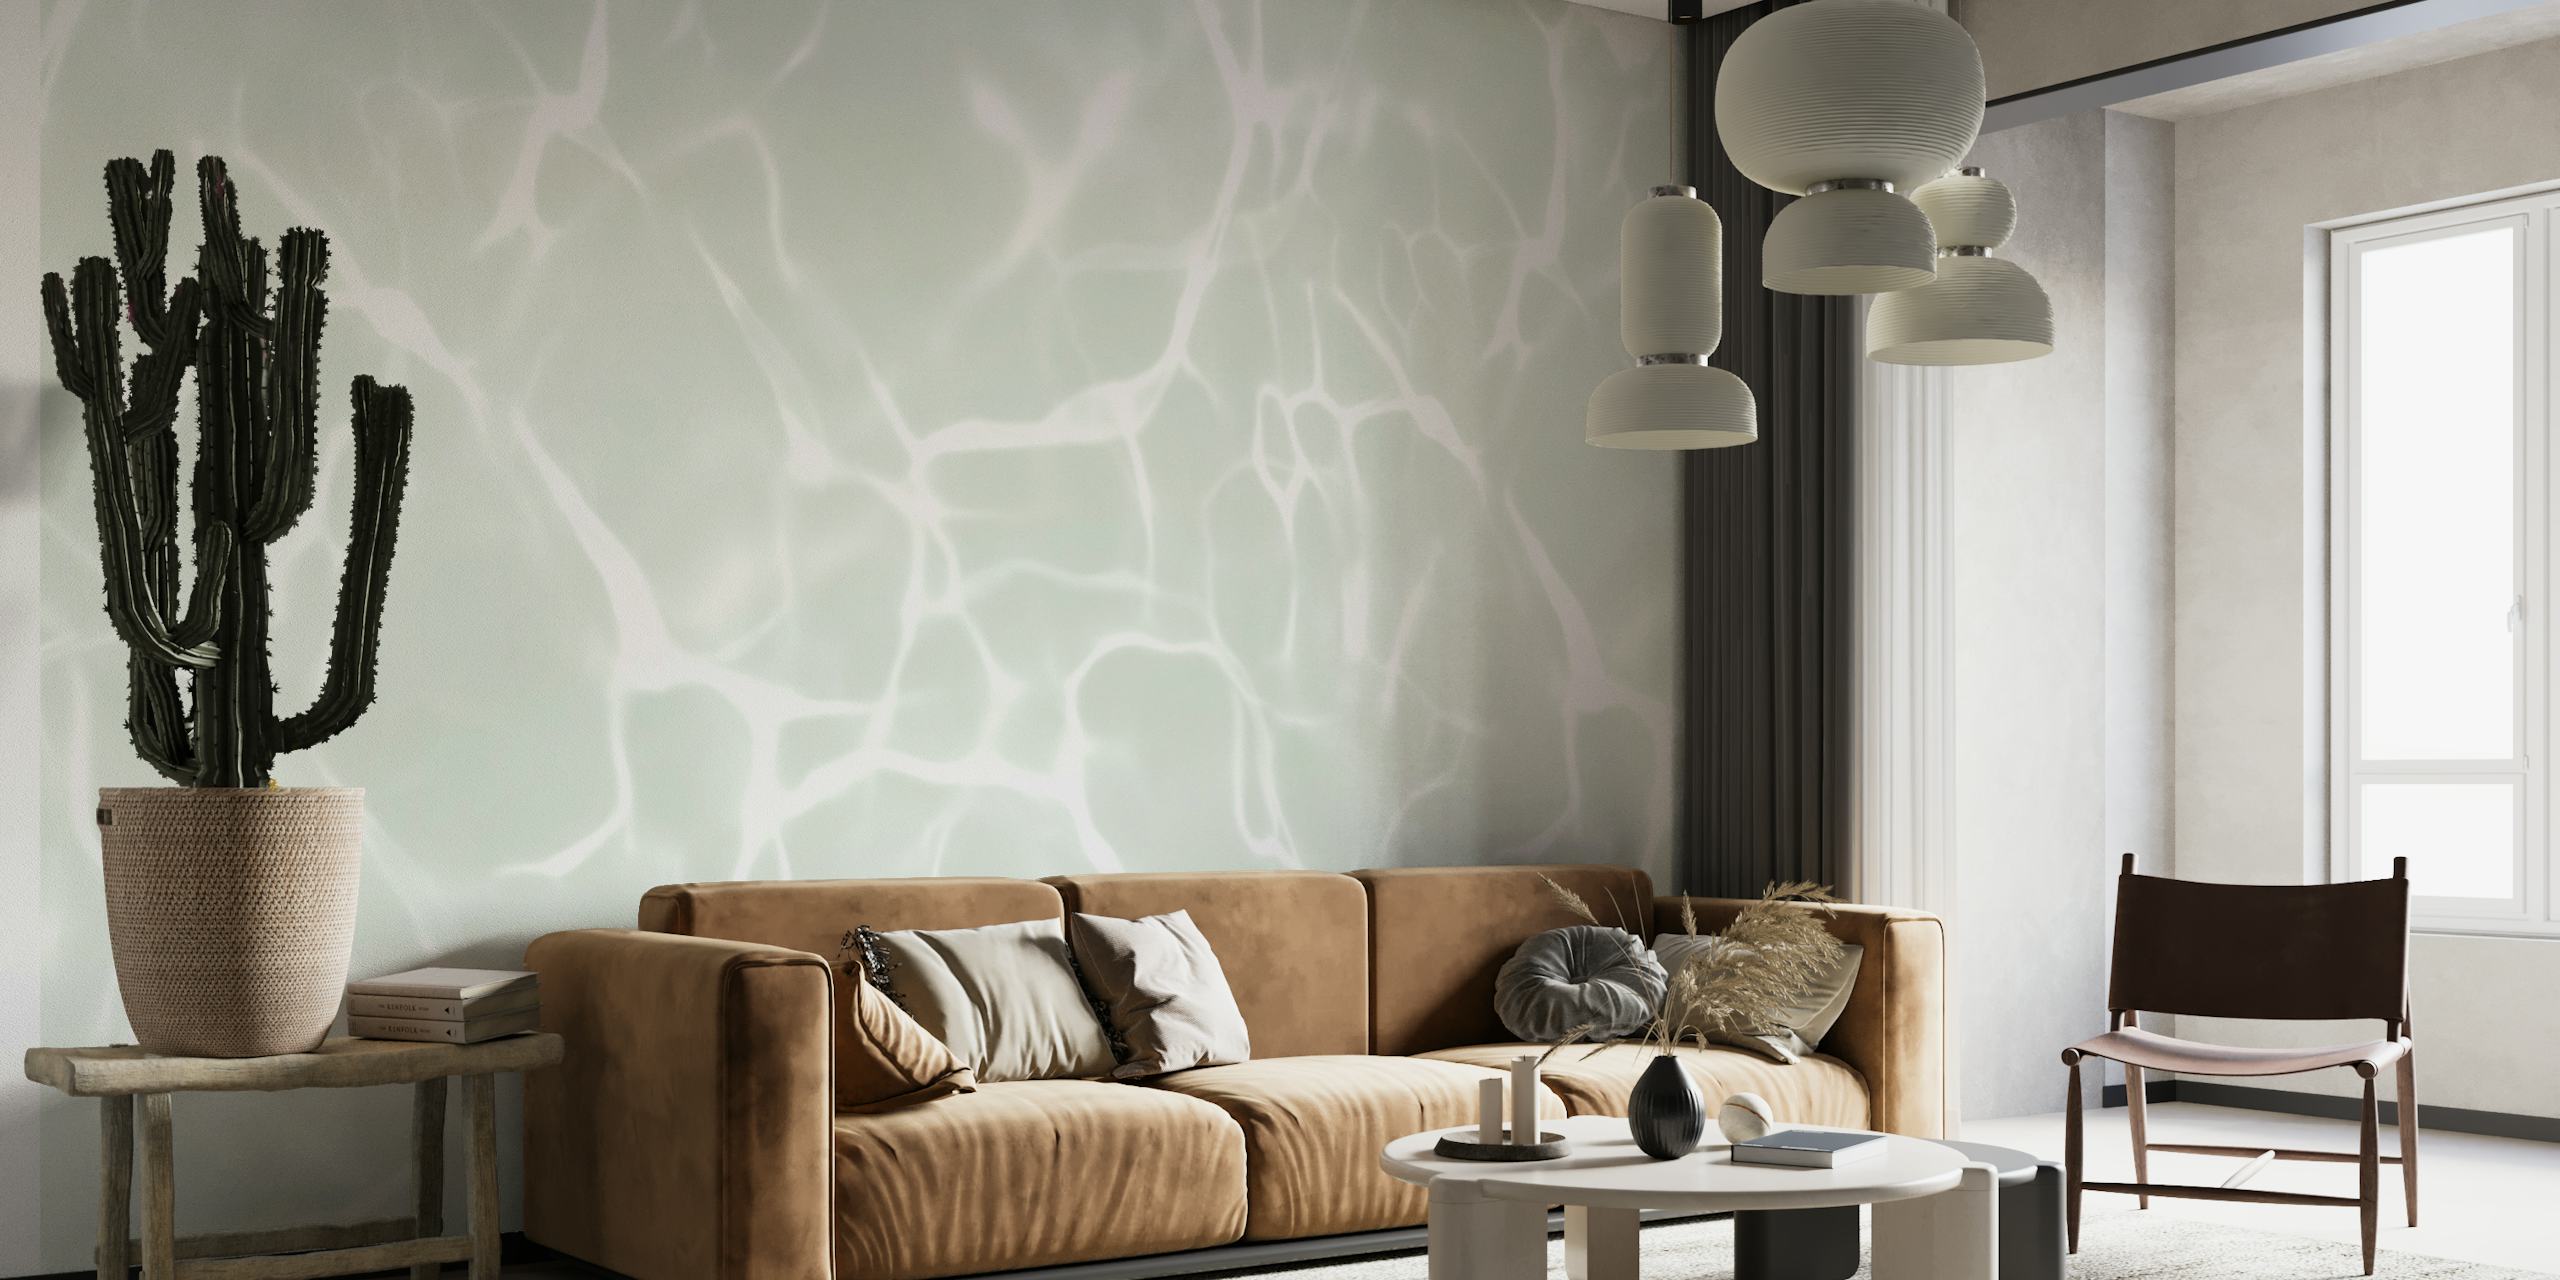 Fotomural vinílico de parede com padrão de água sutil em tons suaves de cinza e branco